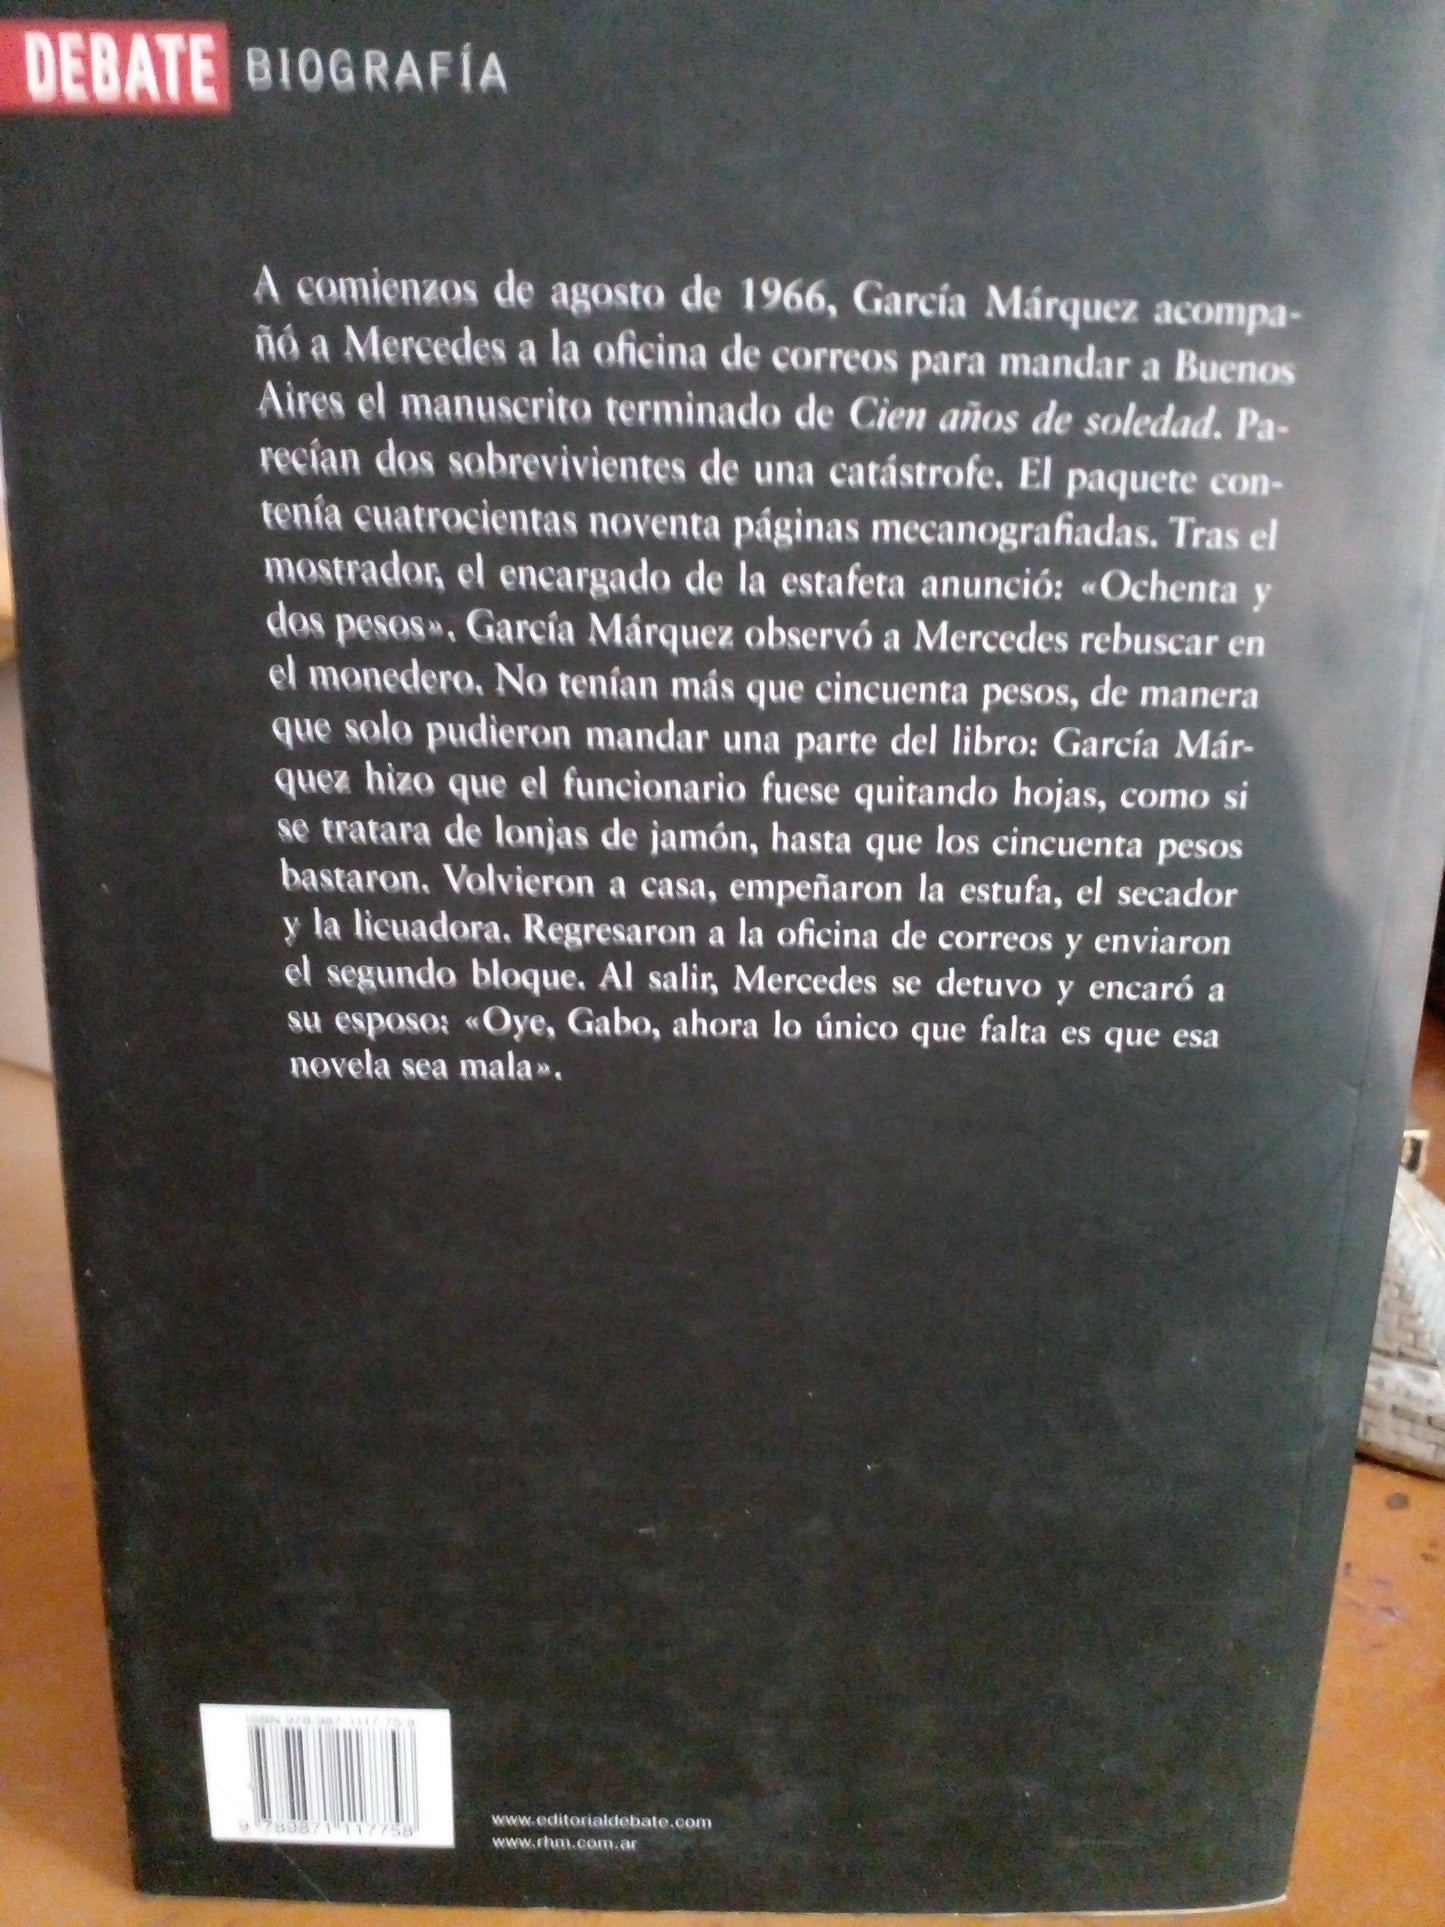 "Gabriel Garcia Marquez: Una vida"